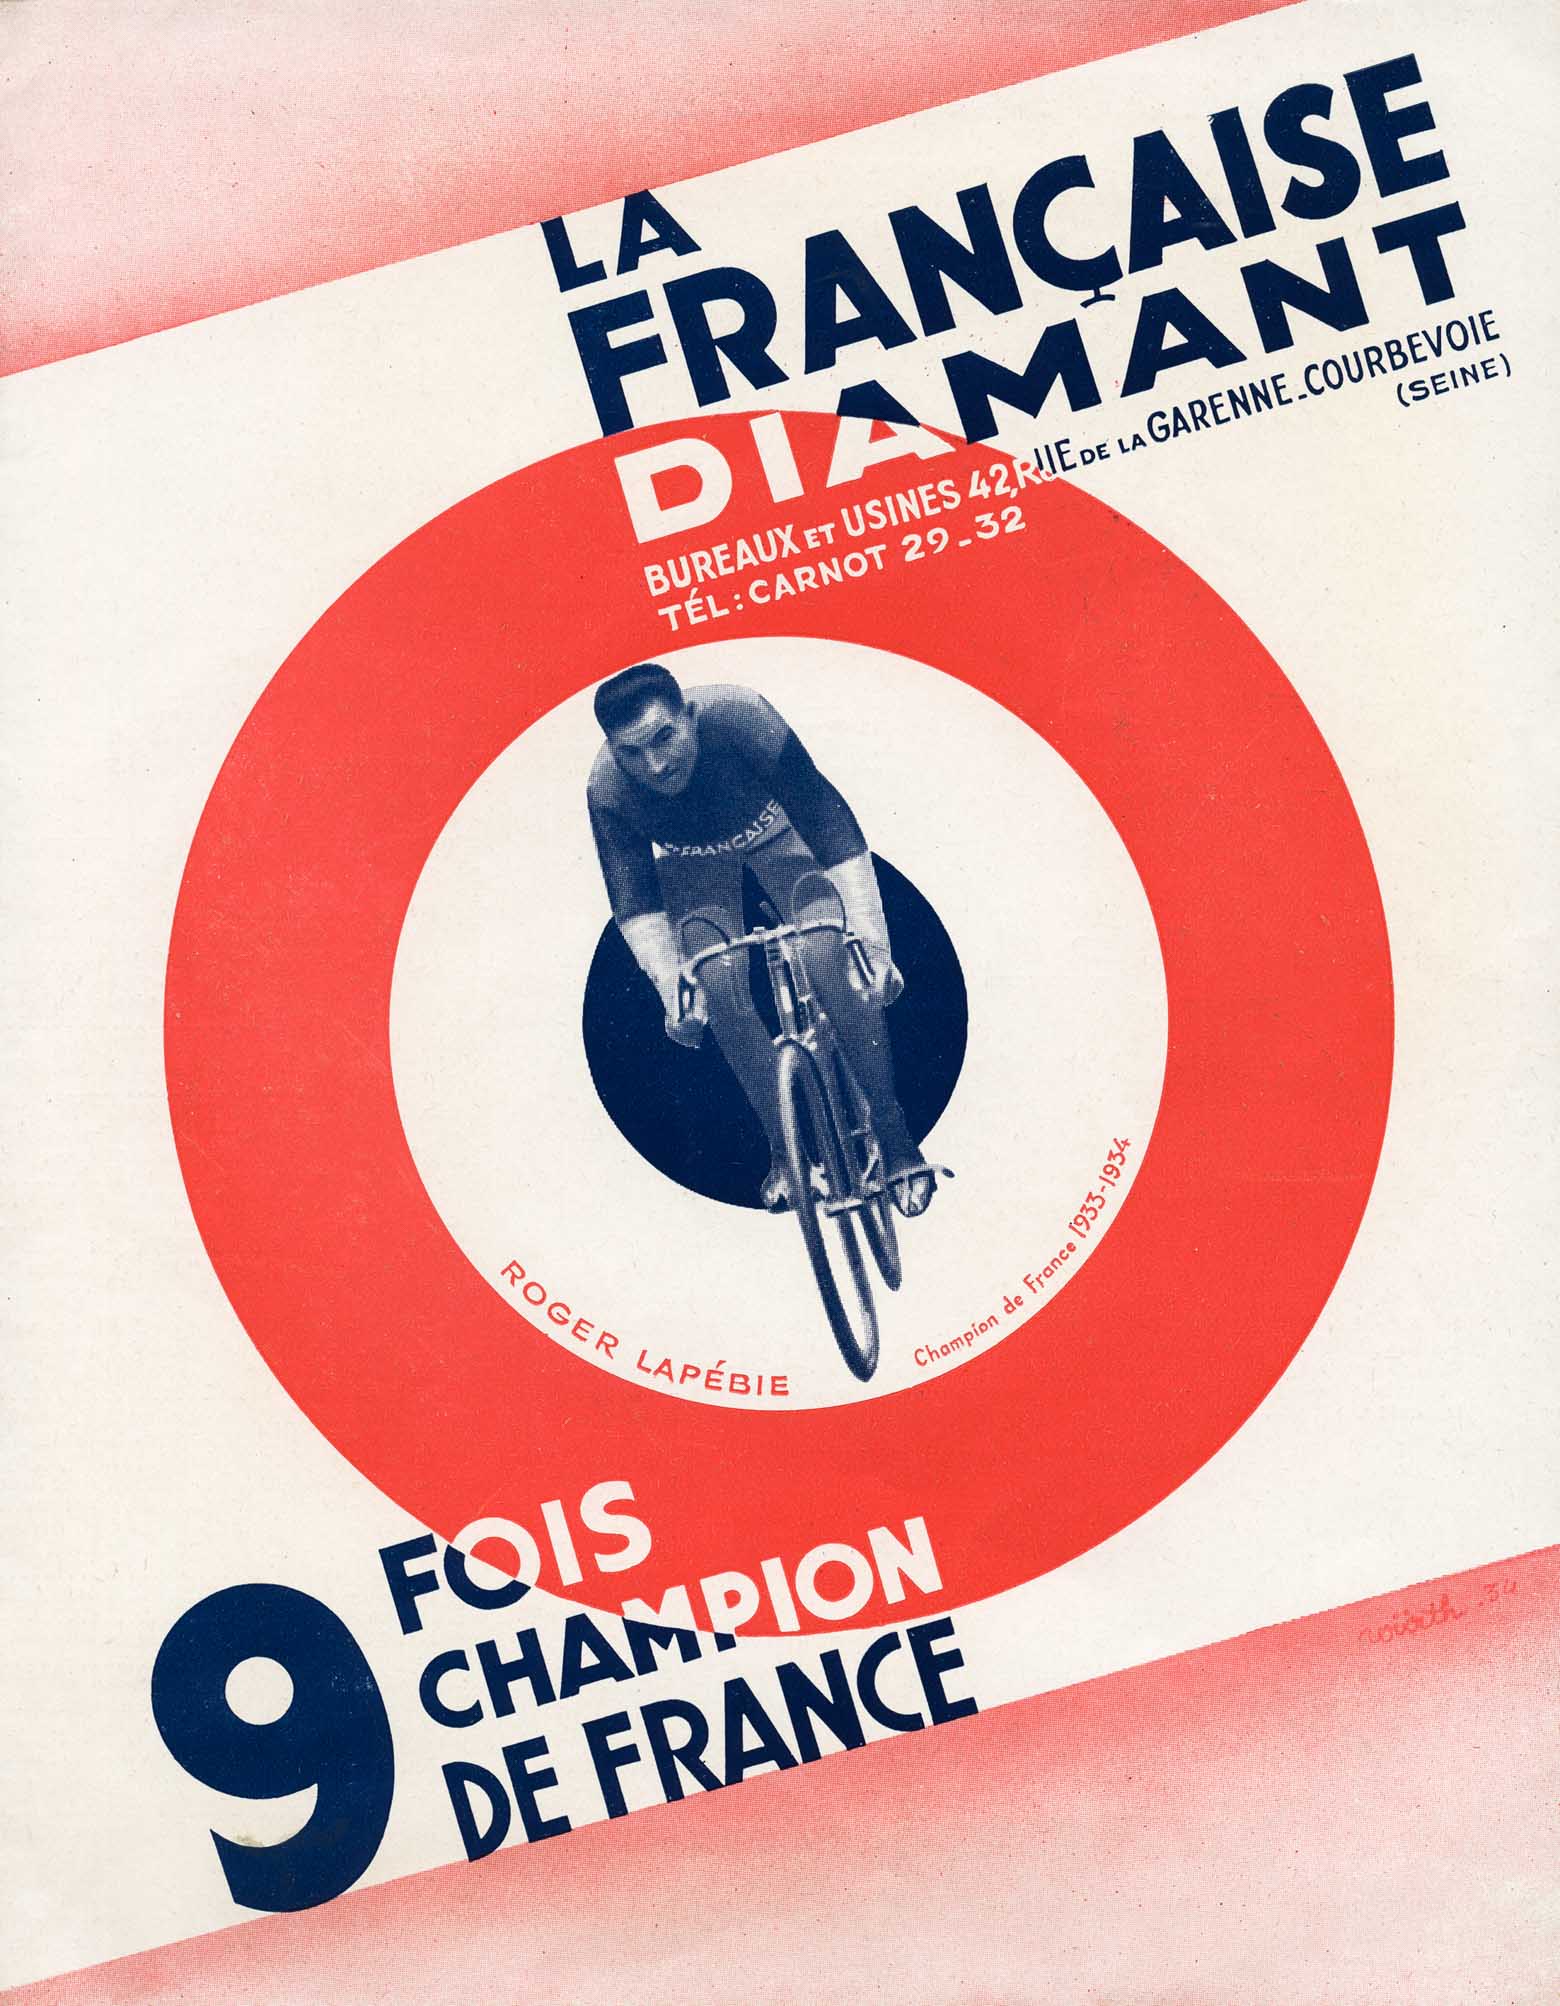 La Francaise Diamant - 9 Fois Champion de France scan 001 main image